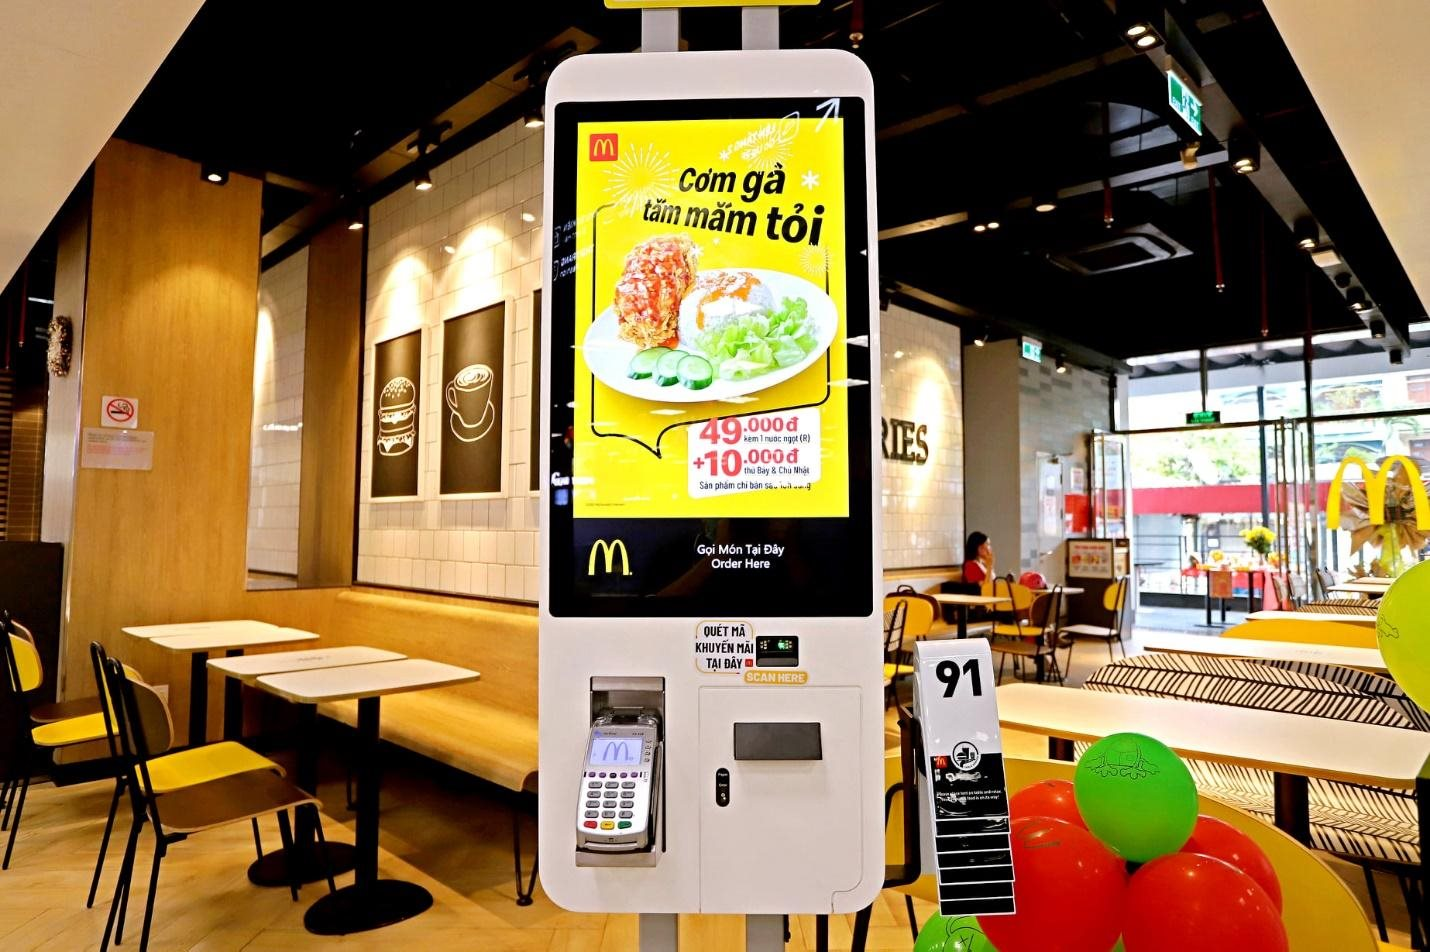 Burger vị Phở  Sự kết hợp độc đáo từ McDonalds  McDonalds Vietnam